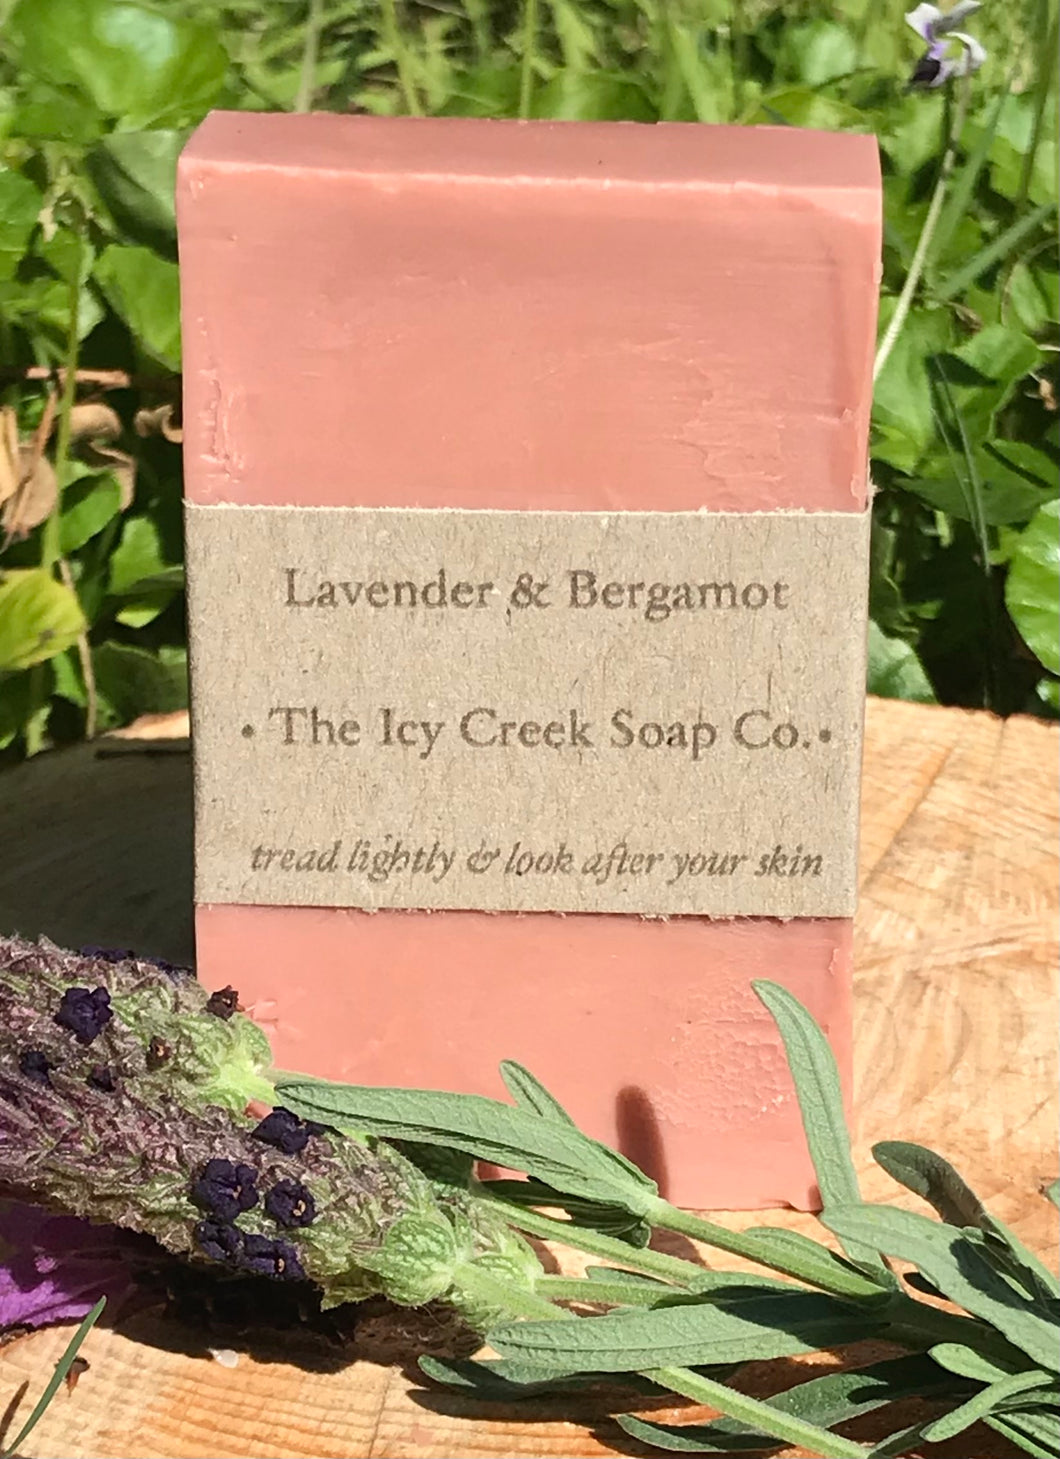 Lavender & bergamot soap